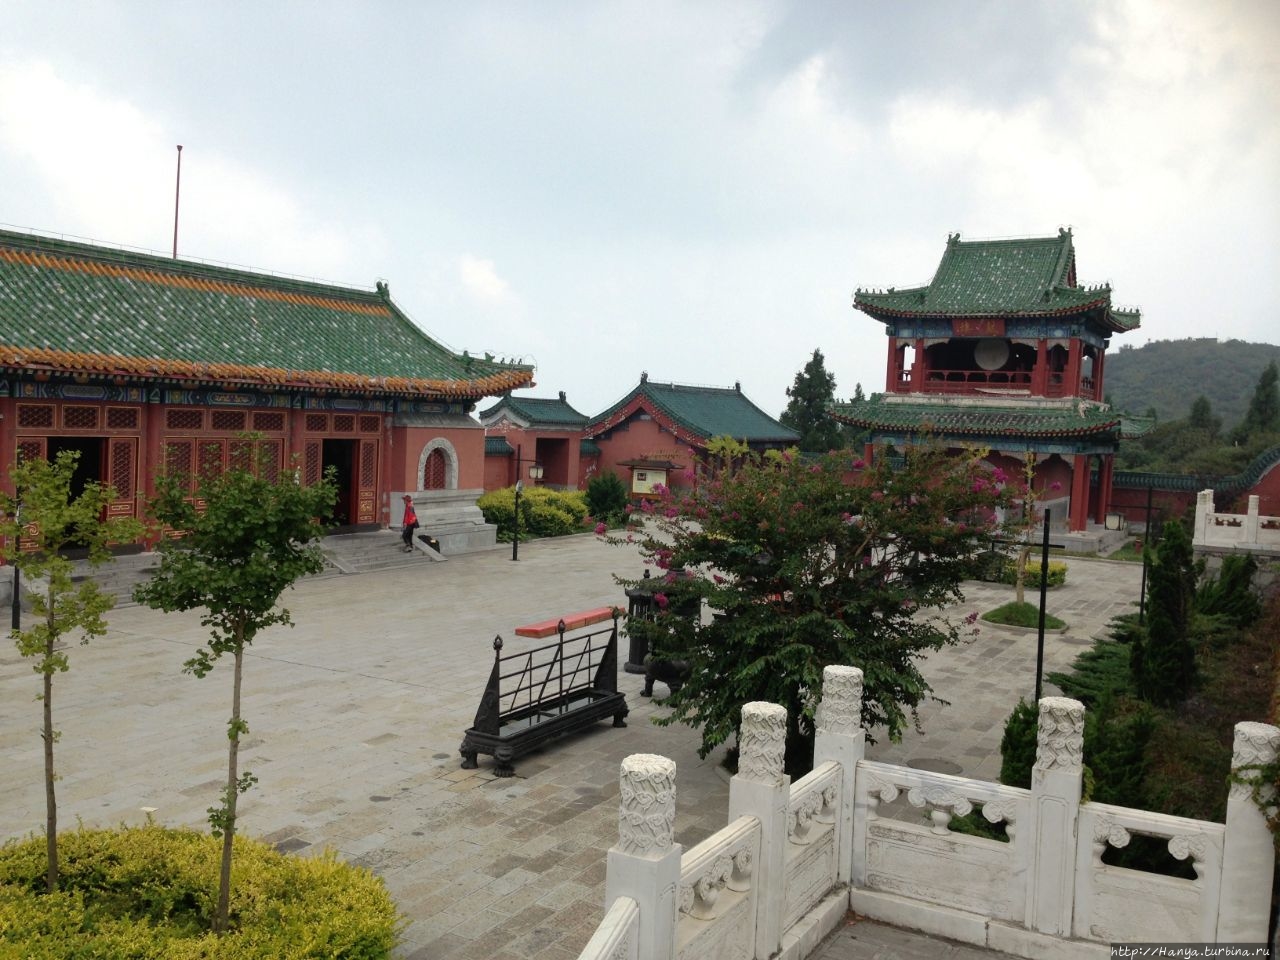 Горный храм Тяньмэнь / Tianmen Mountain Temple